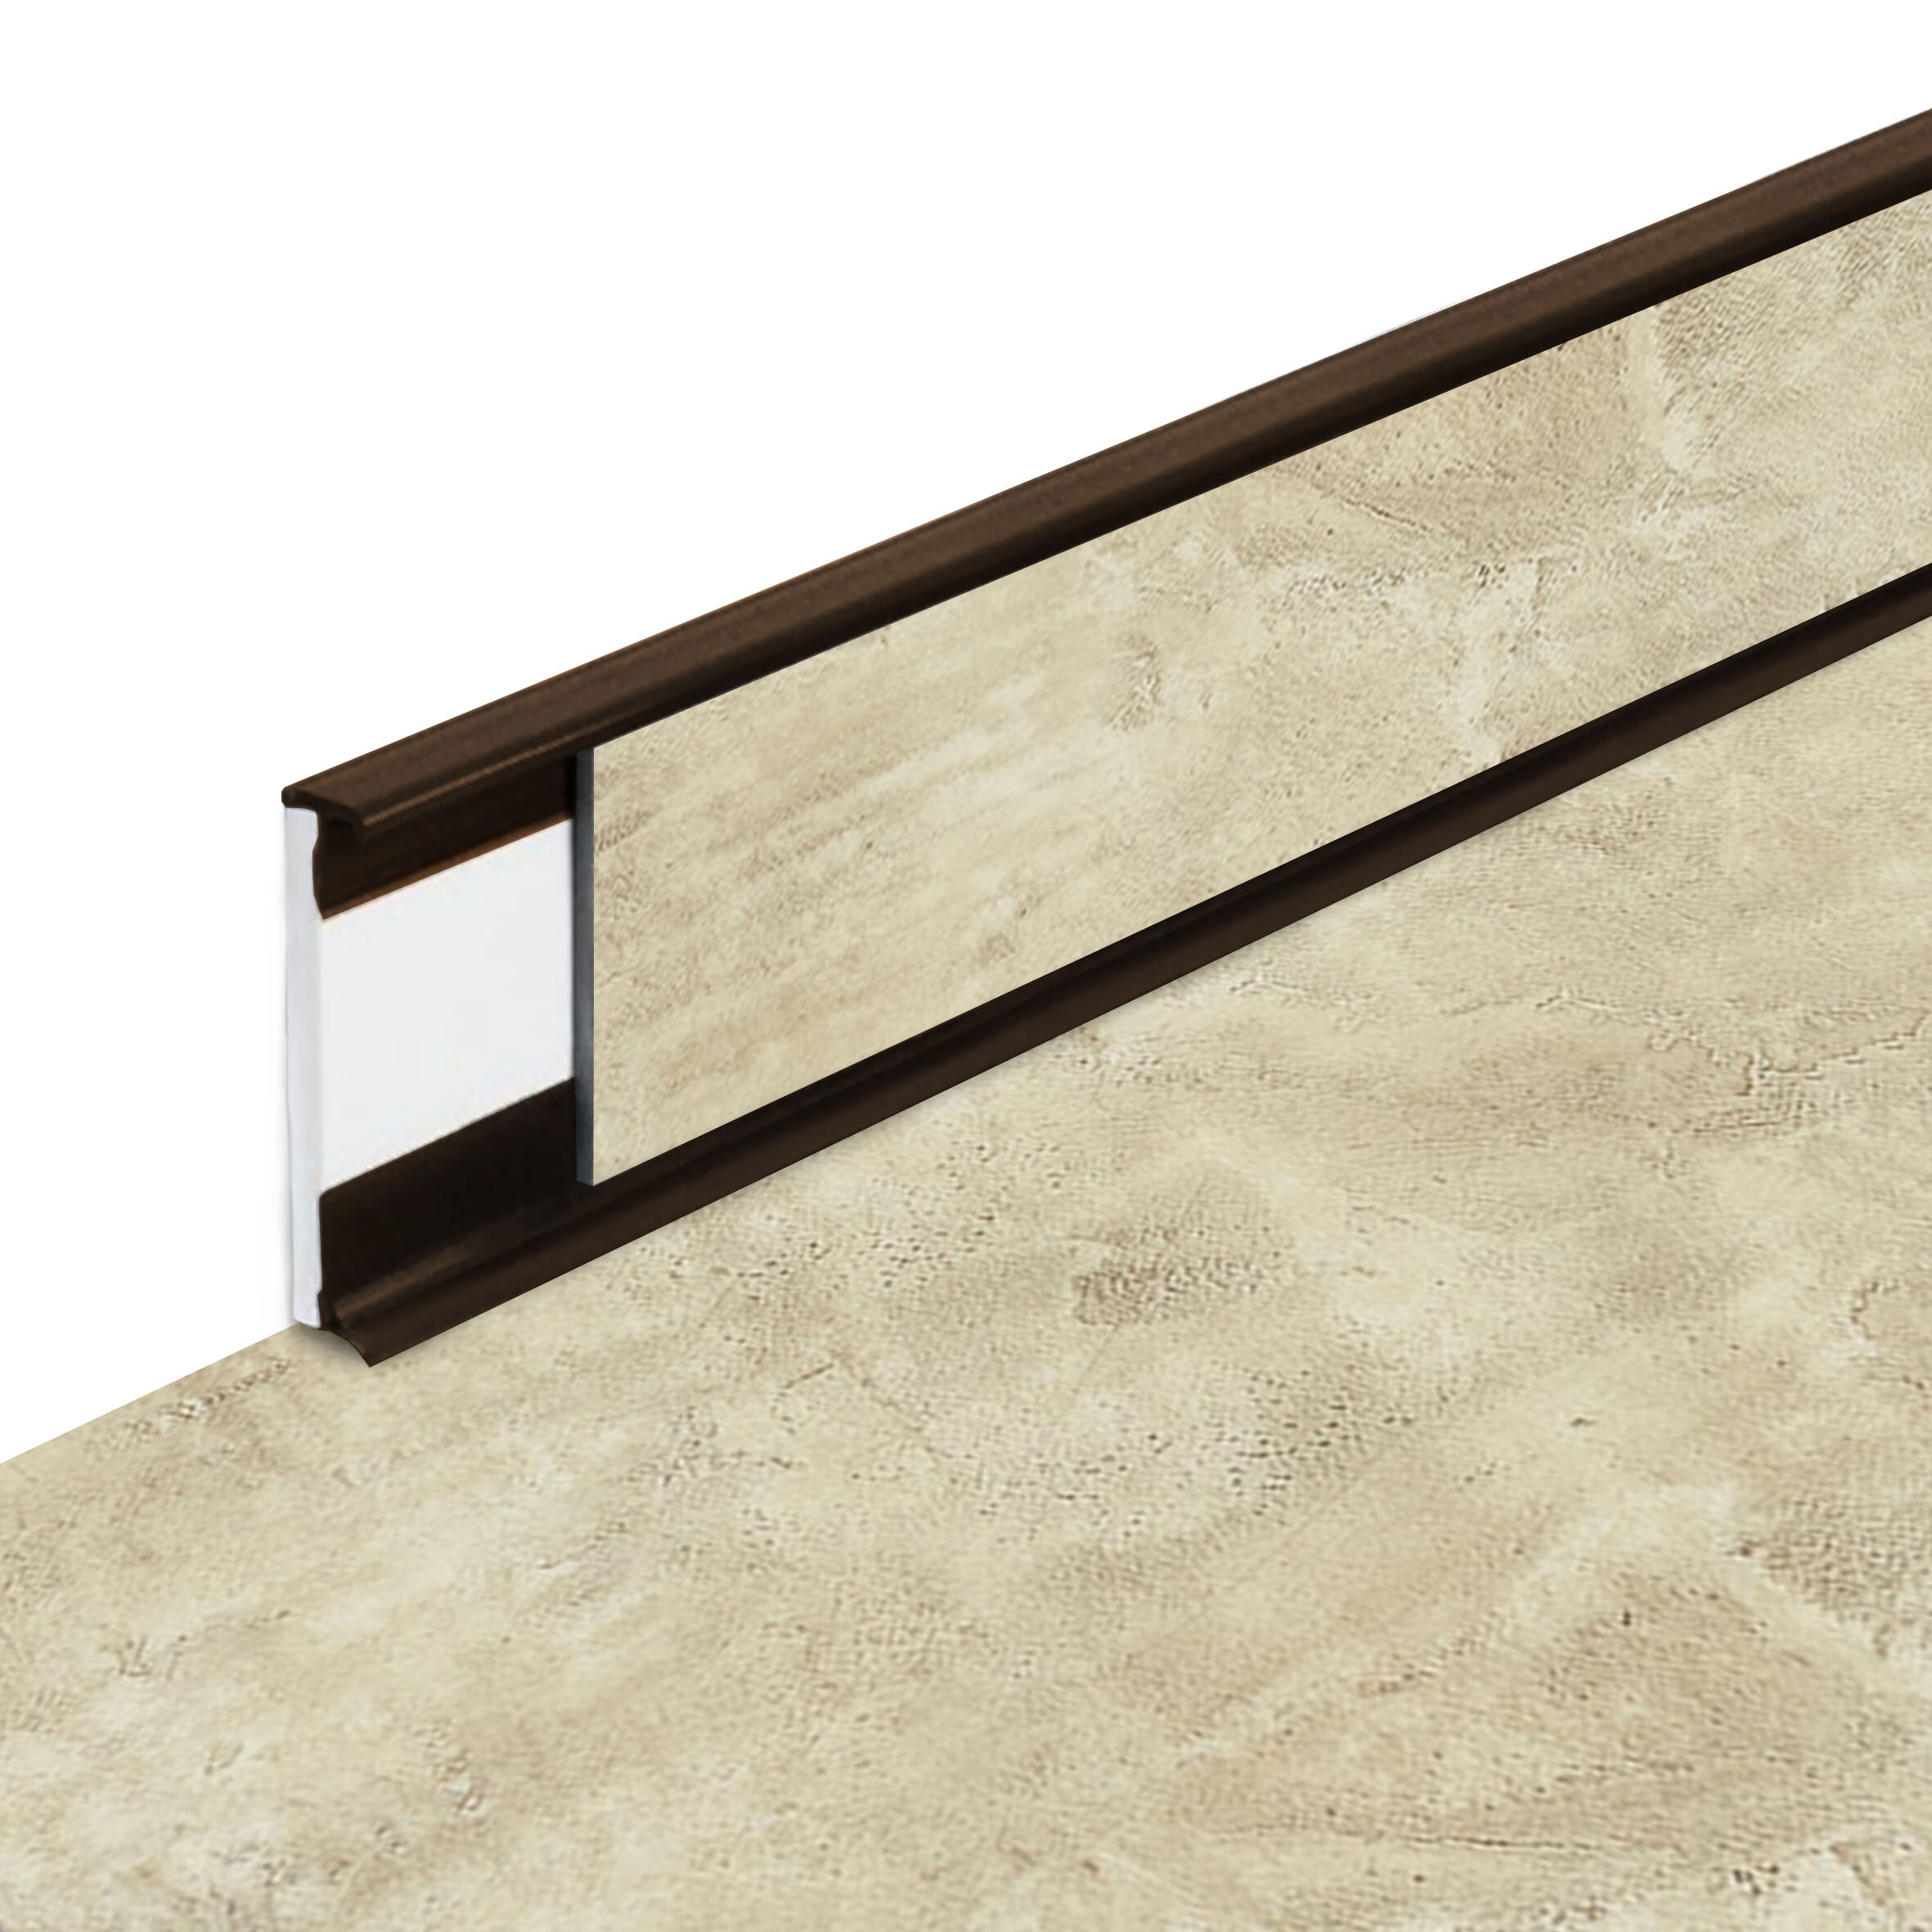 PVC vinylová soklová podlahová lišta Fortelock Business Forsen Sea Bay C016 Brown - délka 200 cm, výška 5,8 cm, tloušťka 1,2 cm